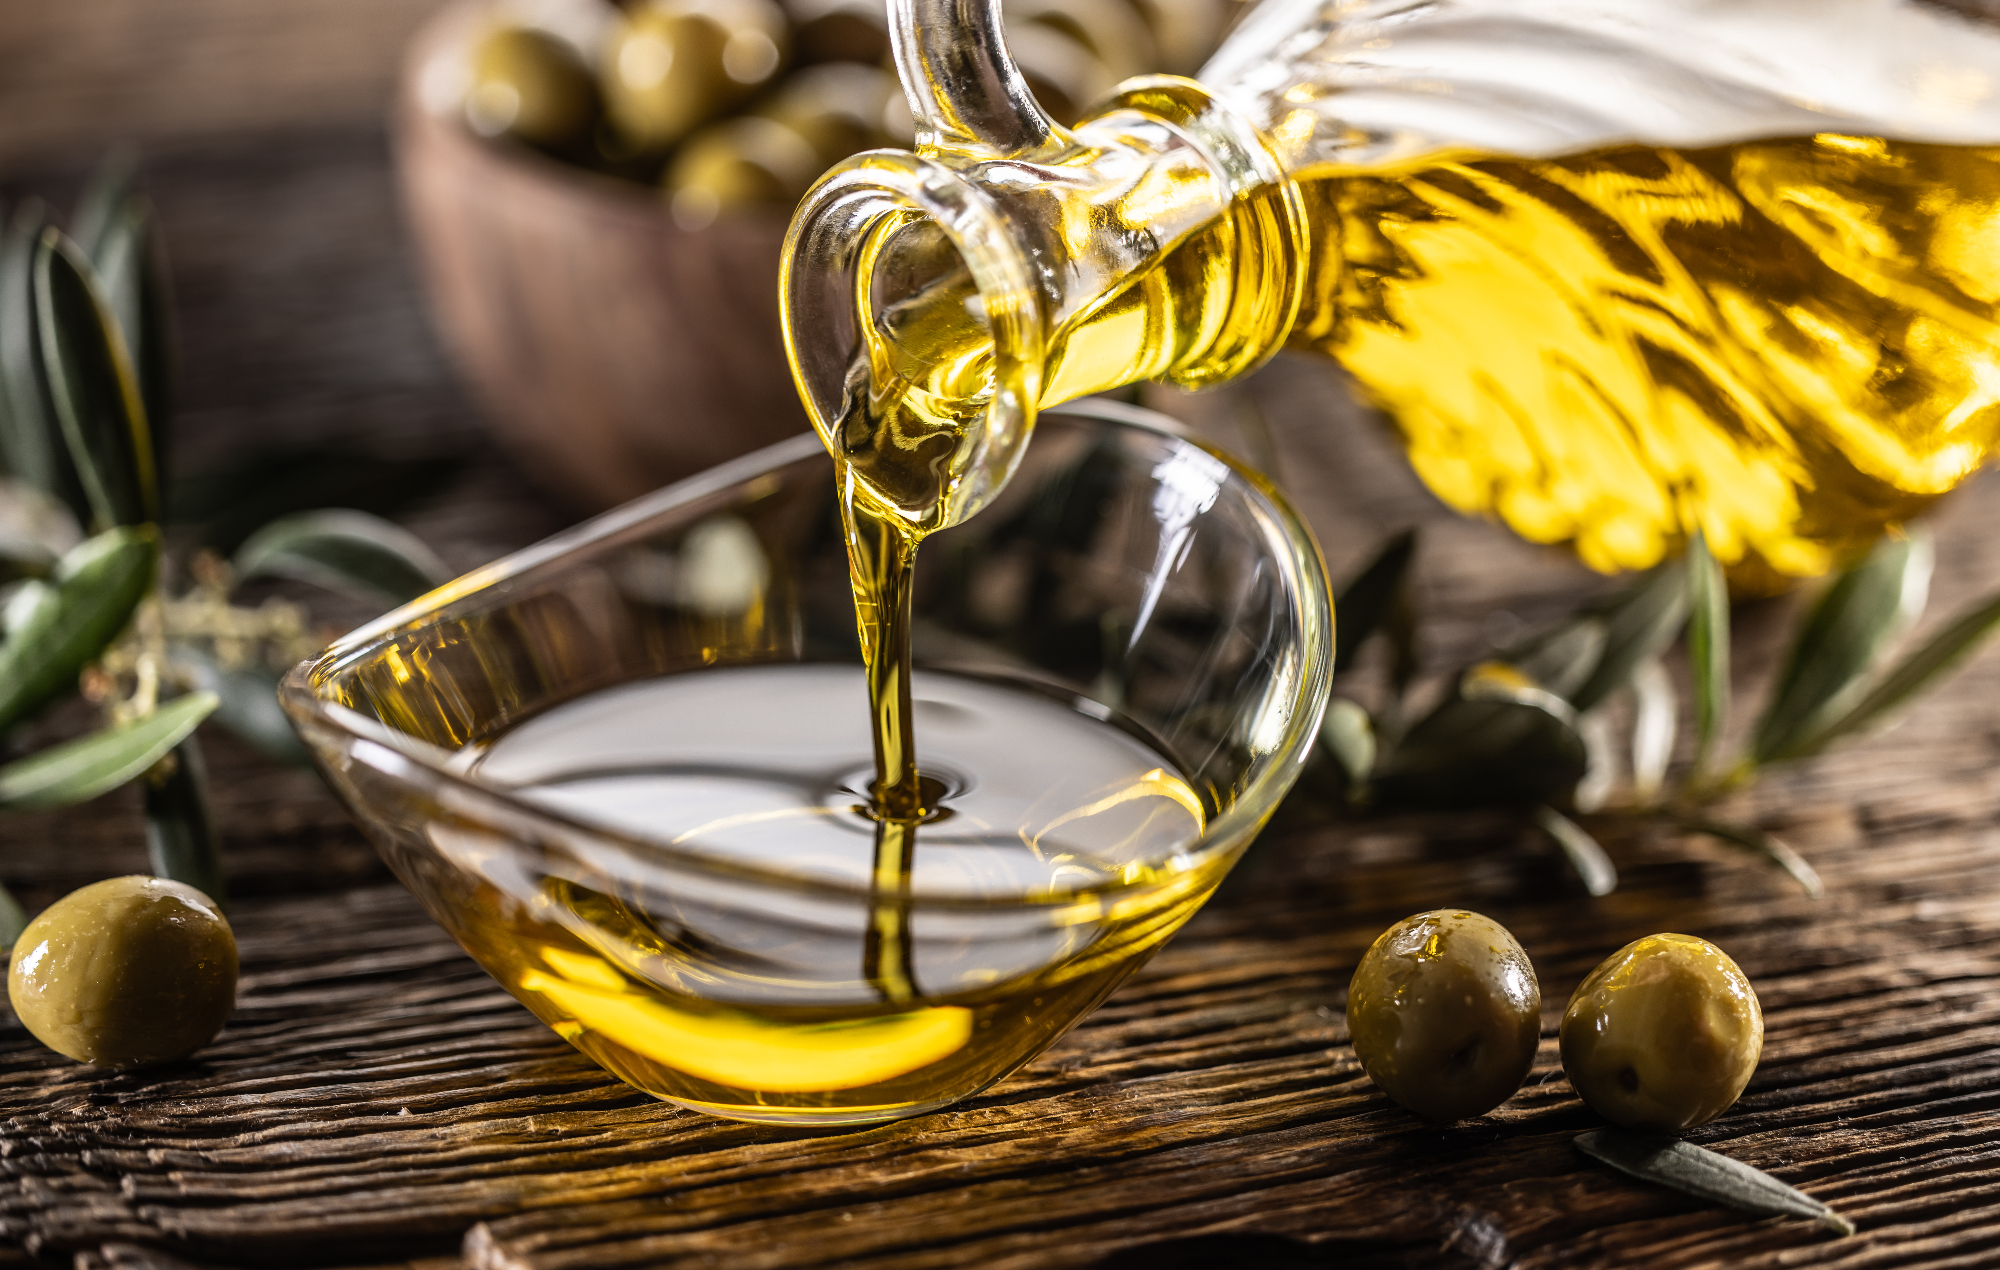 Oljčno olje je najbolj zdrava vrsta olja